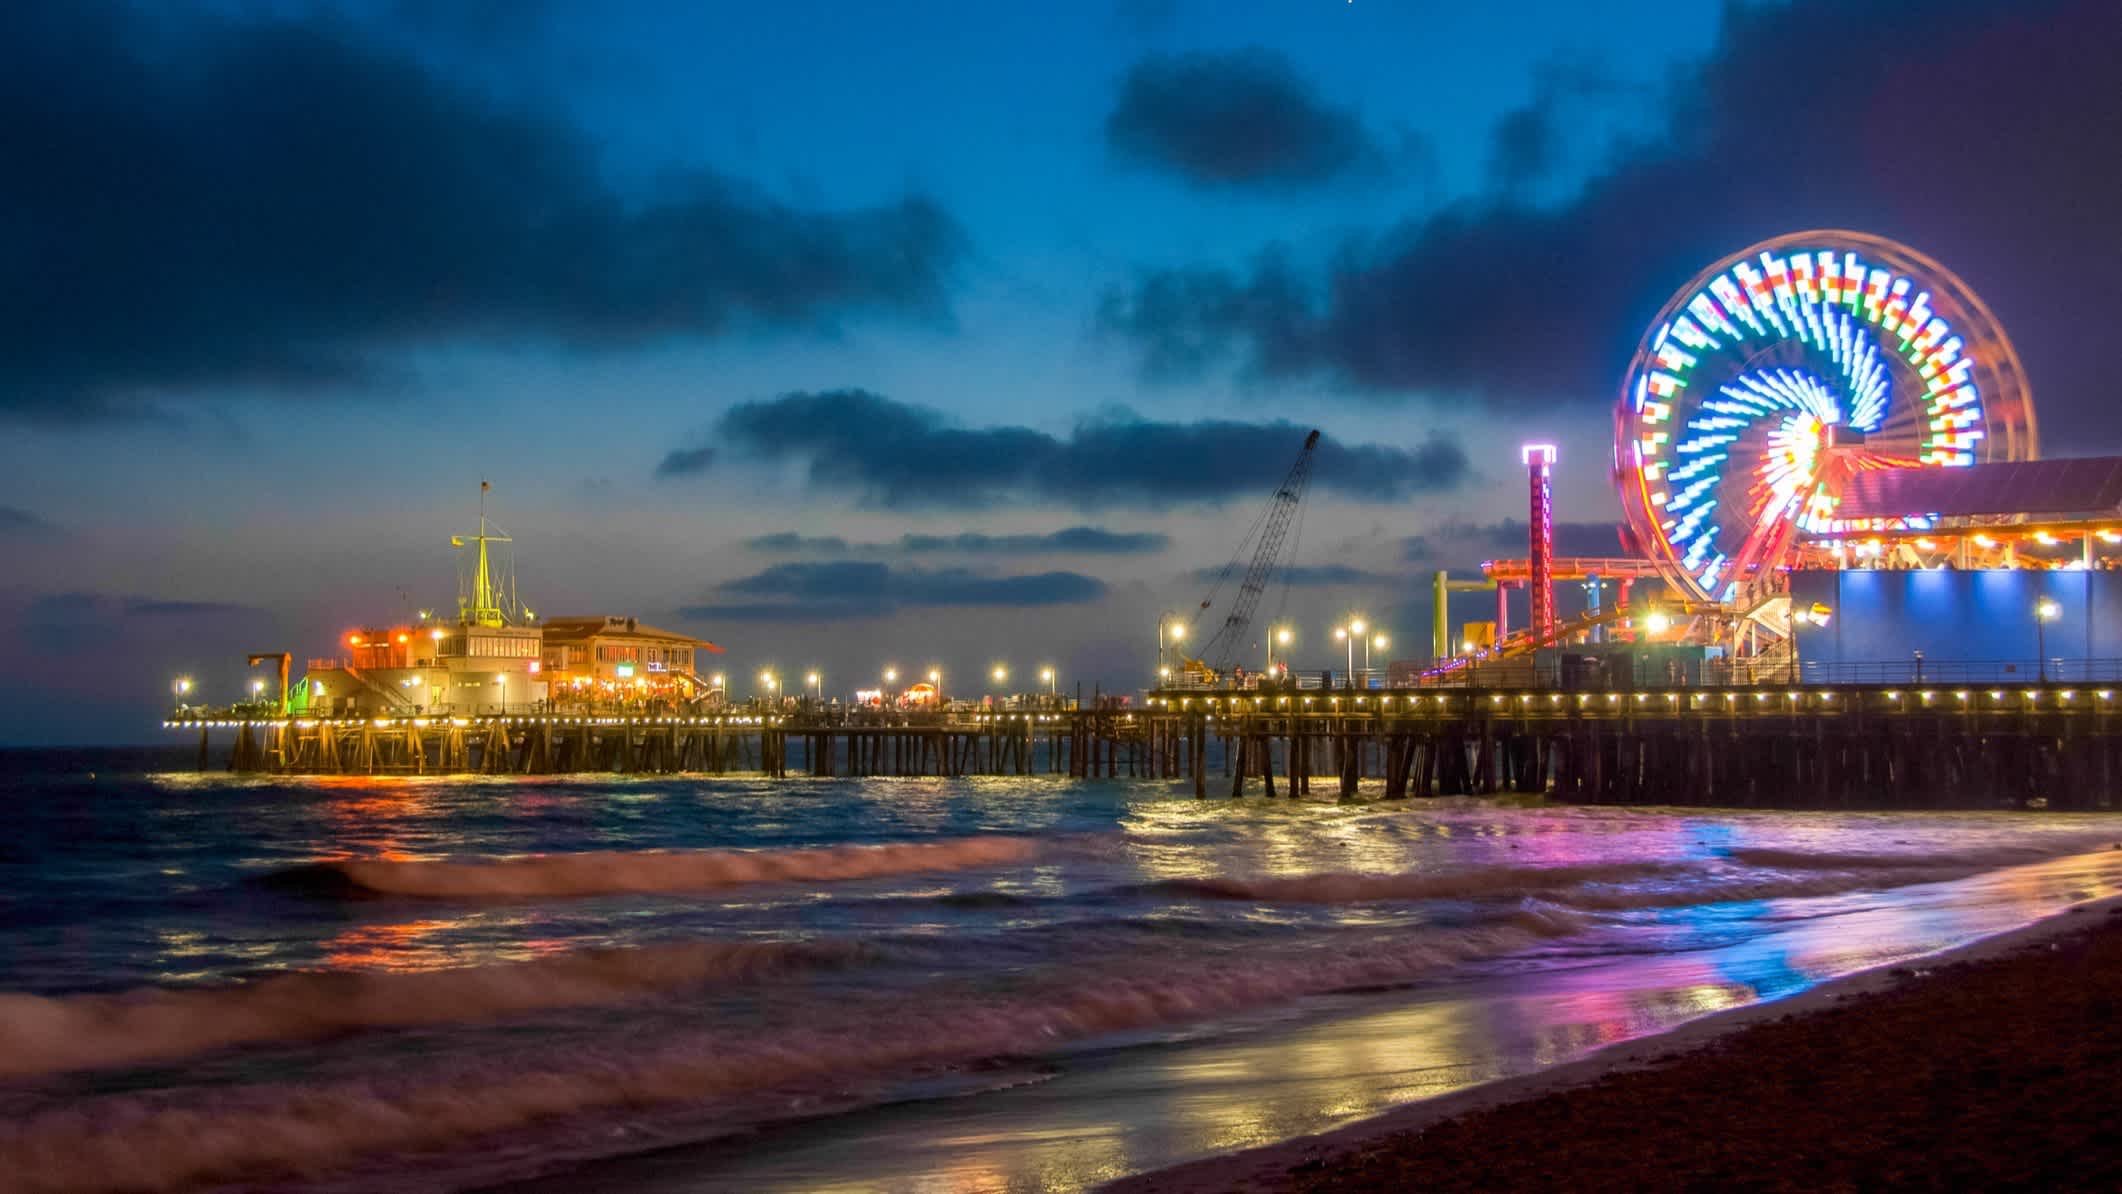 Der Strand von Santa Monica, State Beach, Santa Monica, Kalifornien, USA bei Nacht und mit Blick auf das beleuchtete Santa Monica Peer mit buntem Riesenrad.